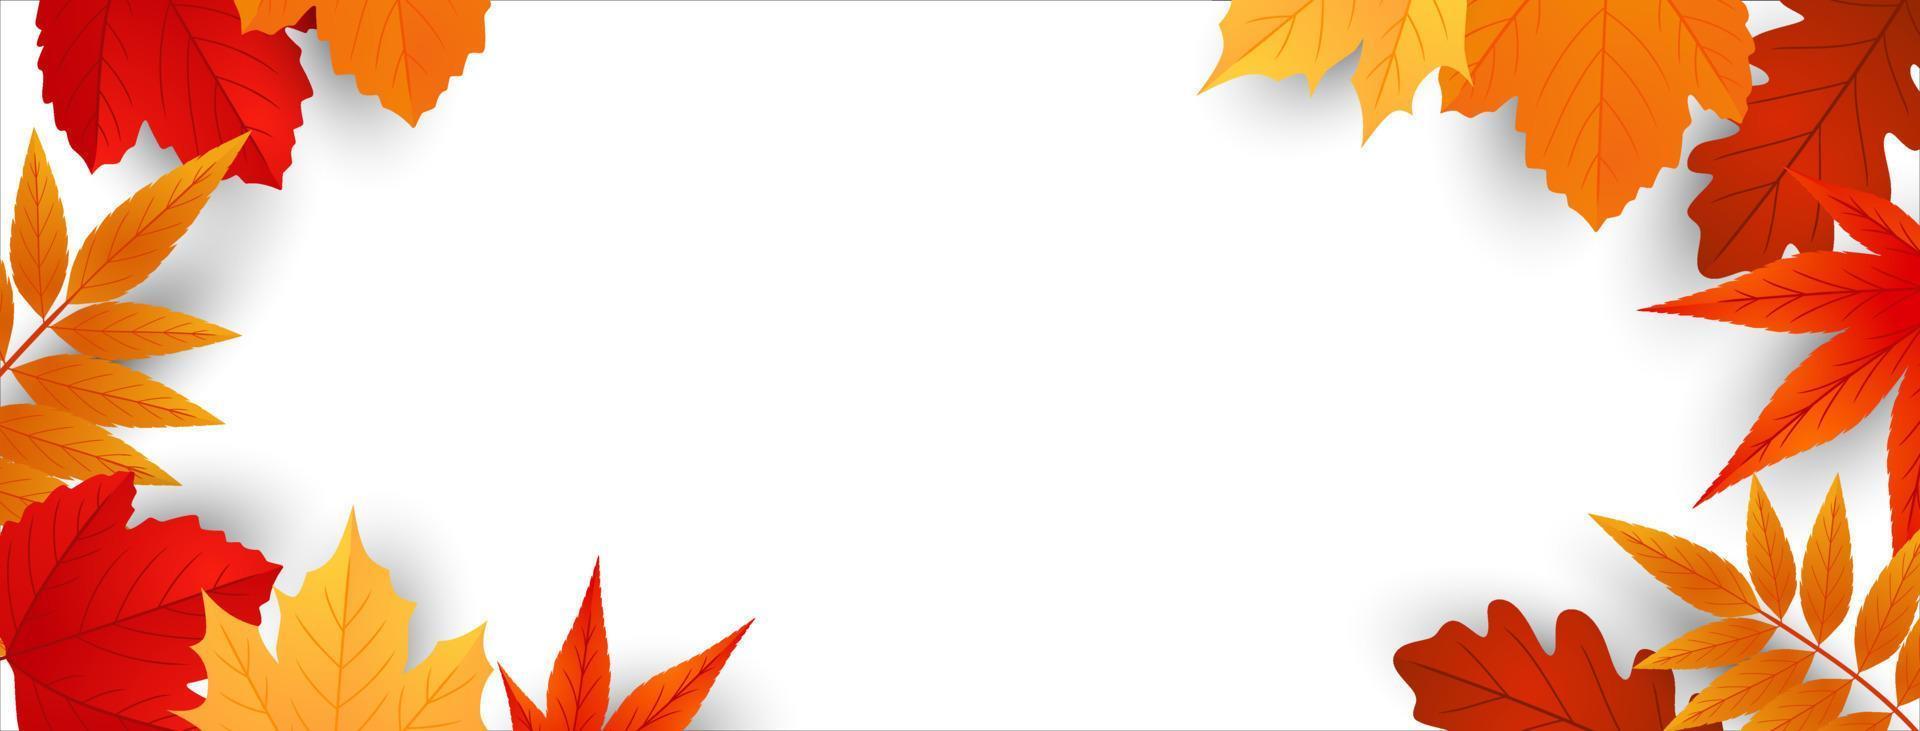 Herbstlaub der Hintergrundrahmen mit Platz für Text. bannerdesign für verkauf, erntedankfest, ernteferien. Vektor-Illustration vektor